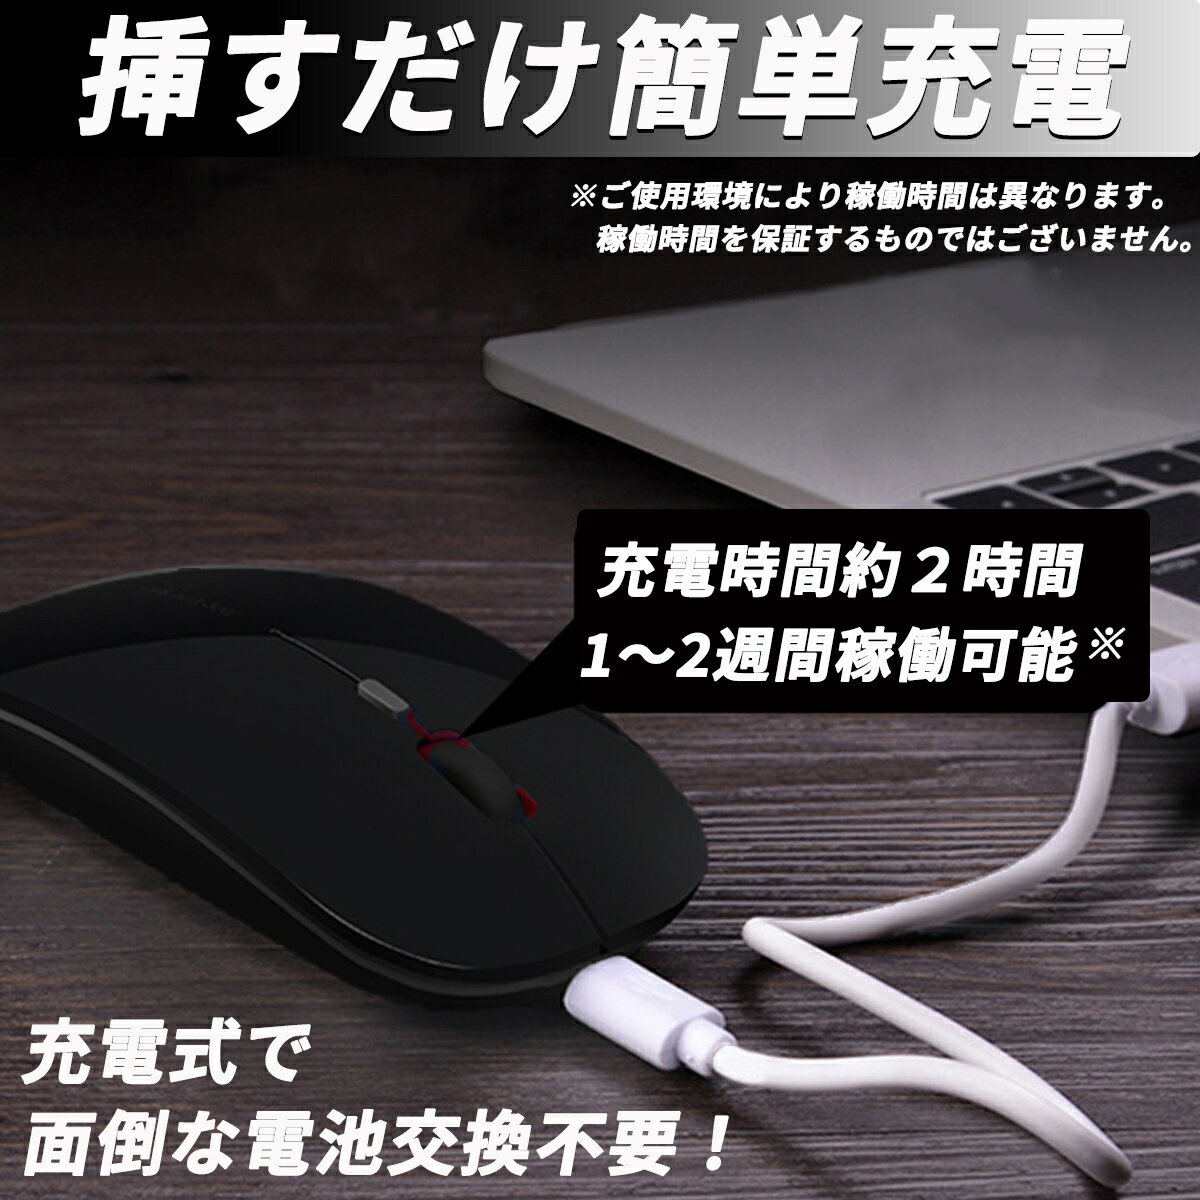 マウス bluetooth ワイヤレス ゲーミングマウス 充電式 静音 小型 USB 充電 無線 有線 薄型 ブルートゥース 2.4g パソコン 光学式